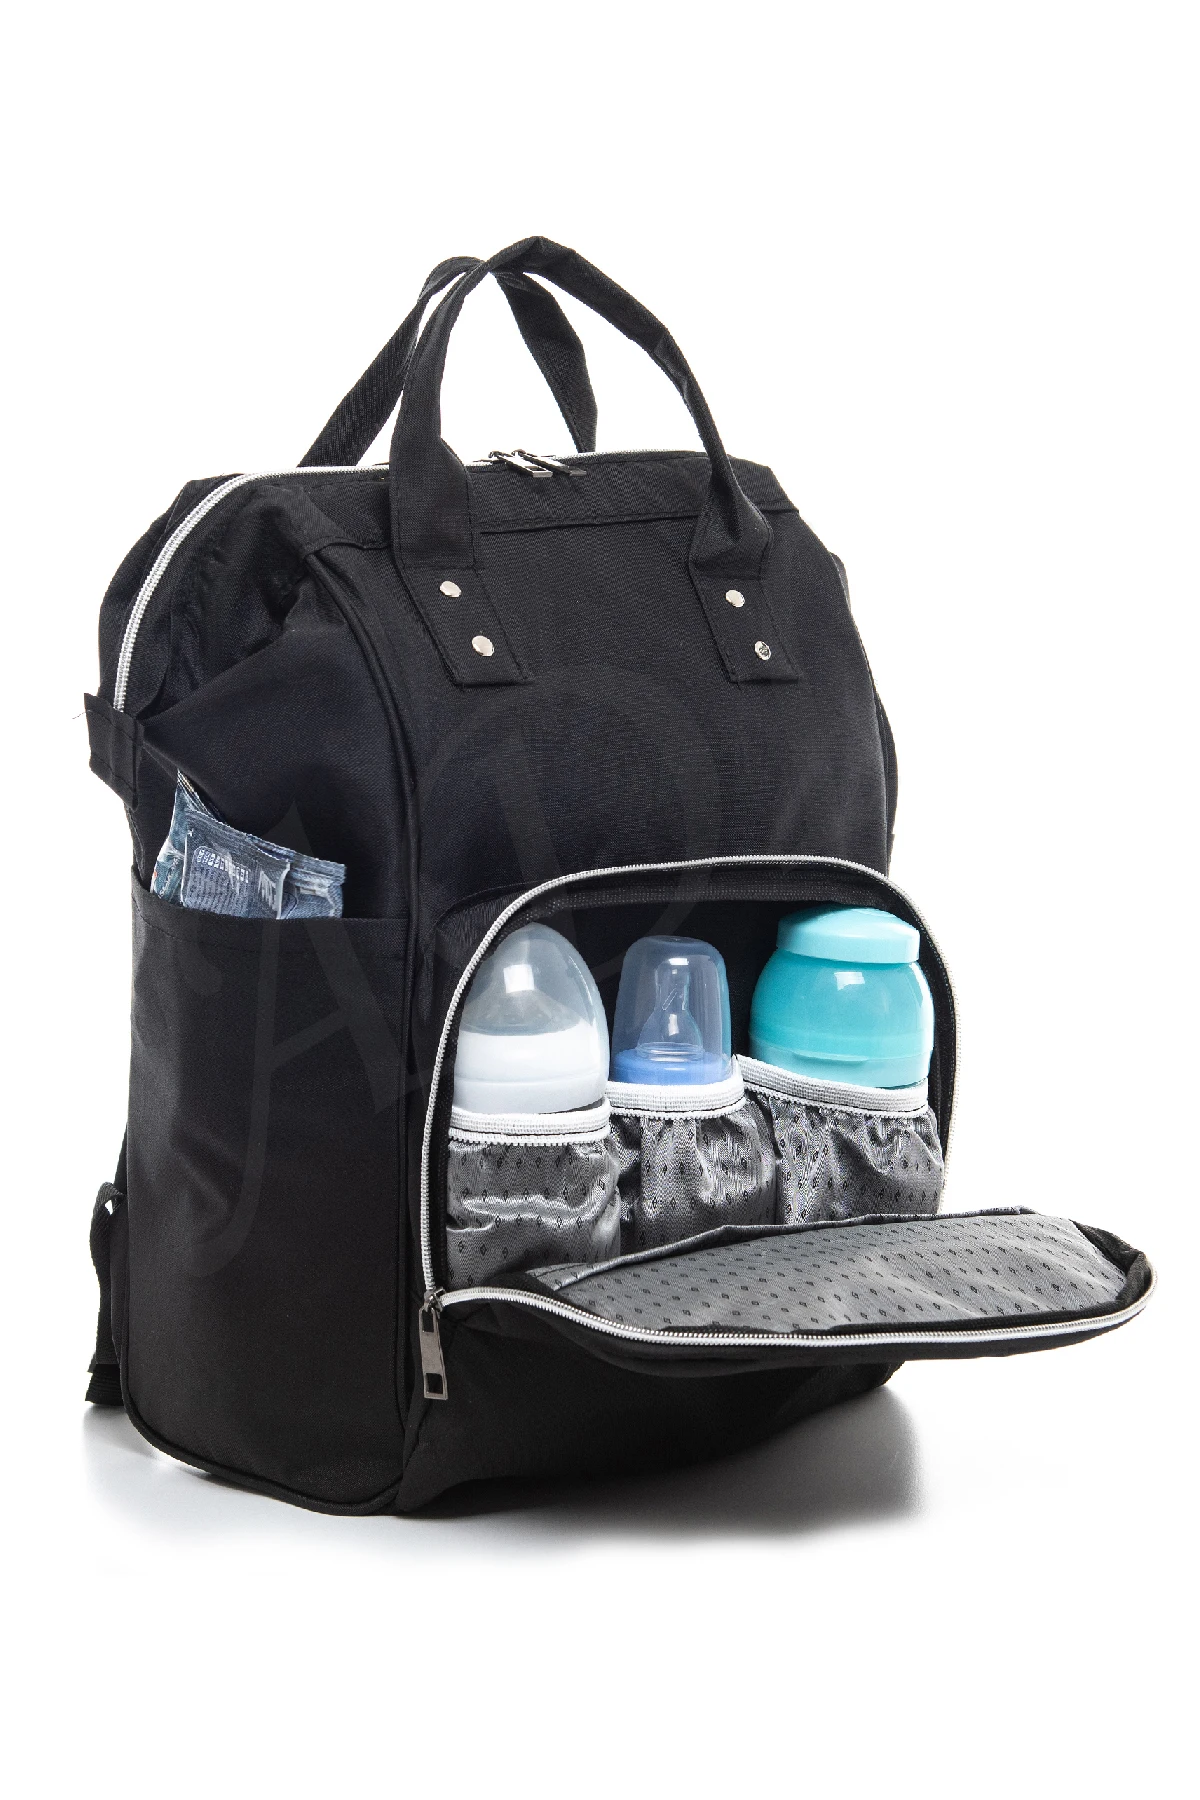 Вместительный рюкзак для мам и малышей, многофункциональная Водонепроницаемая прочная тканевая сумка для подгузников, товары для ухода за ...